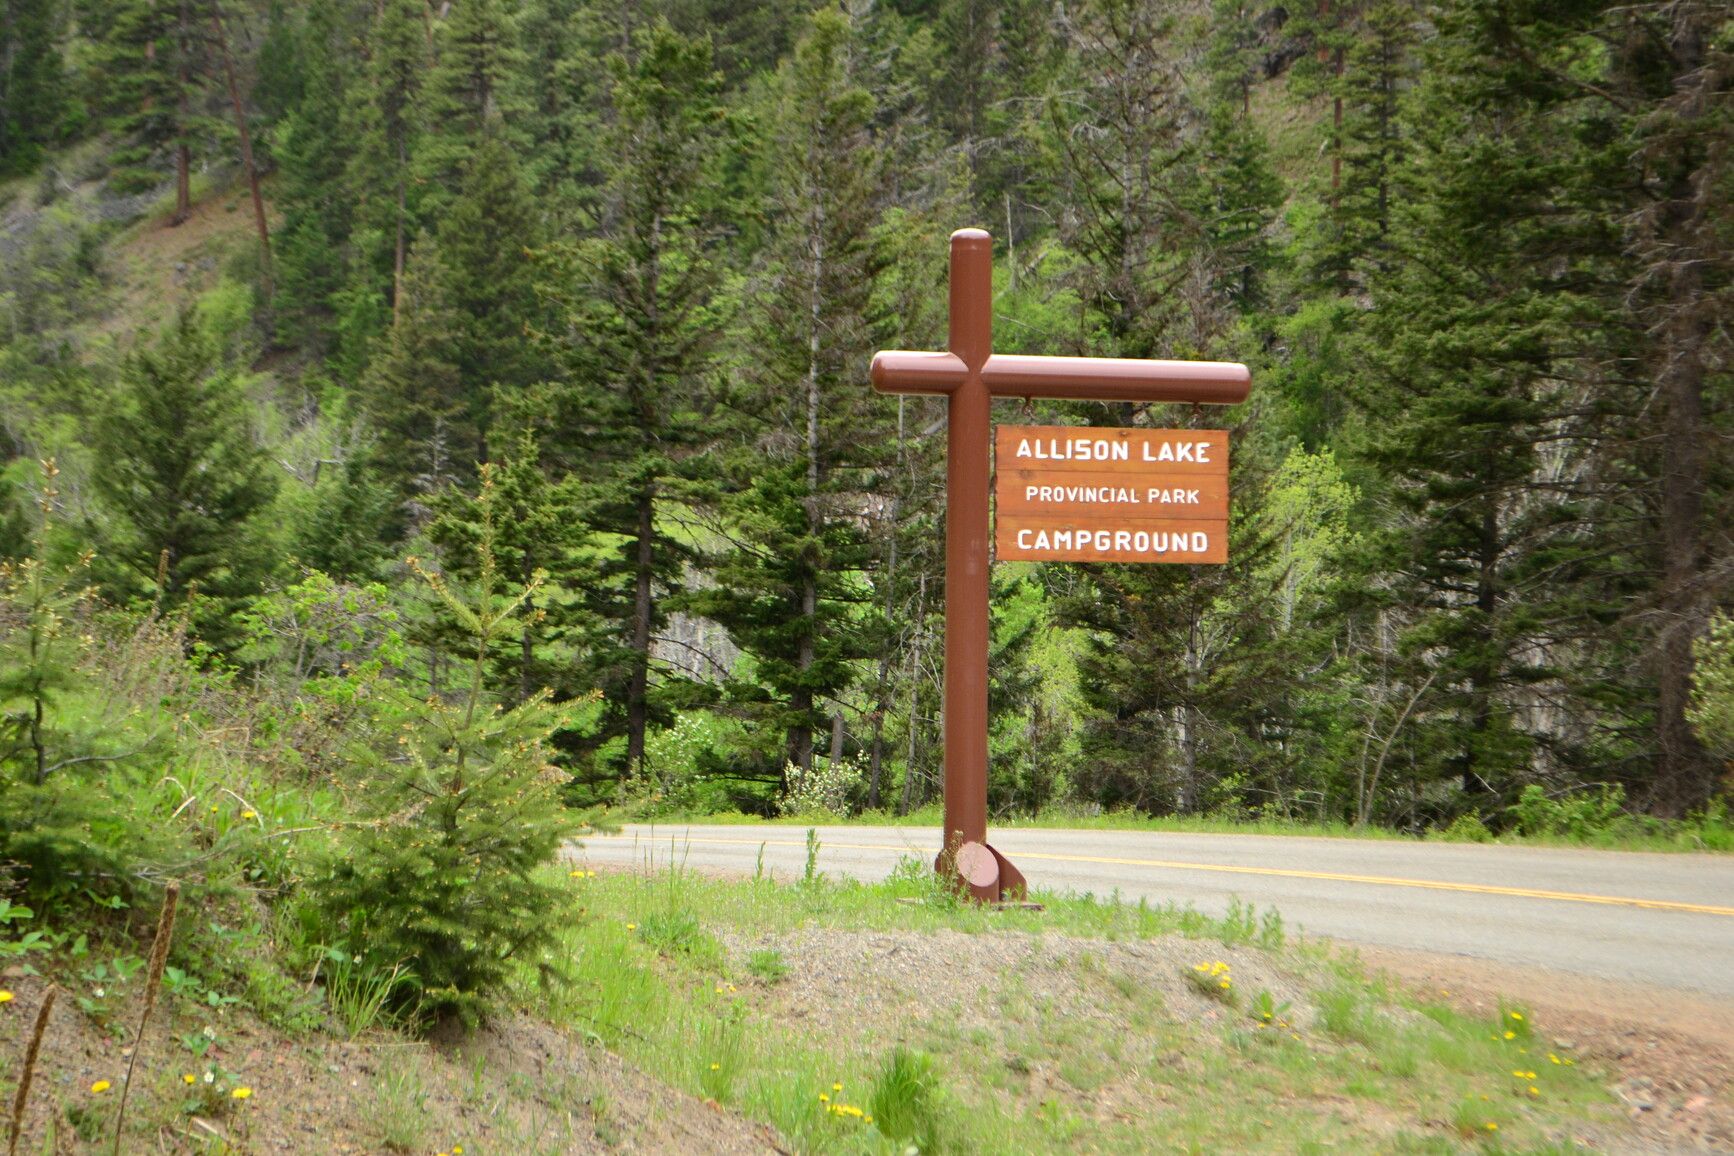 Park entrance sign for Allison Lake Park.